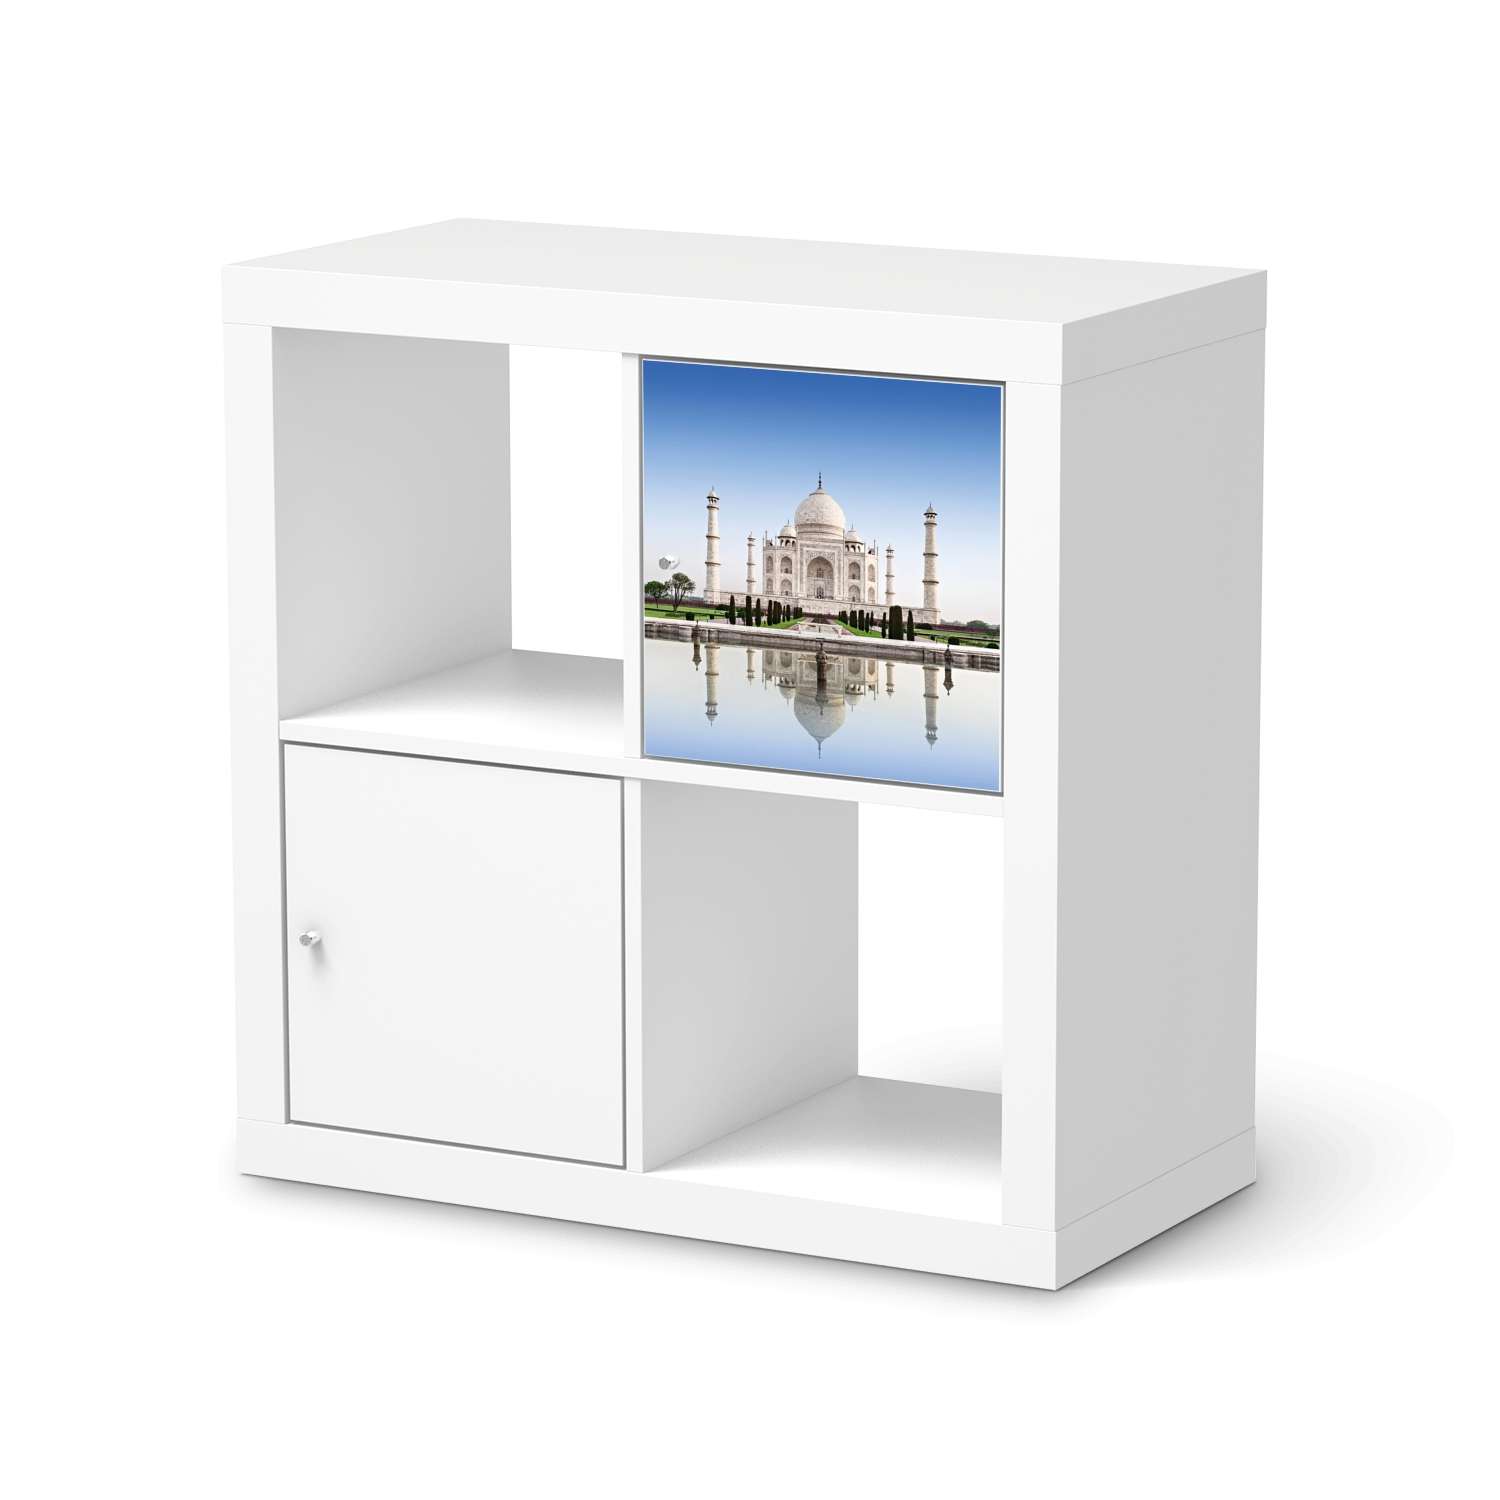 Klebefolie IKEA Expedit Regal T?r einzeln - Design: Taj Mahal von creatisto